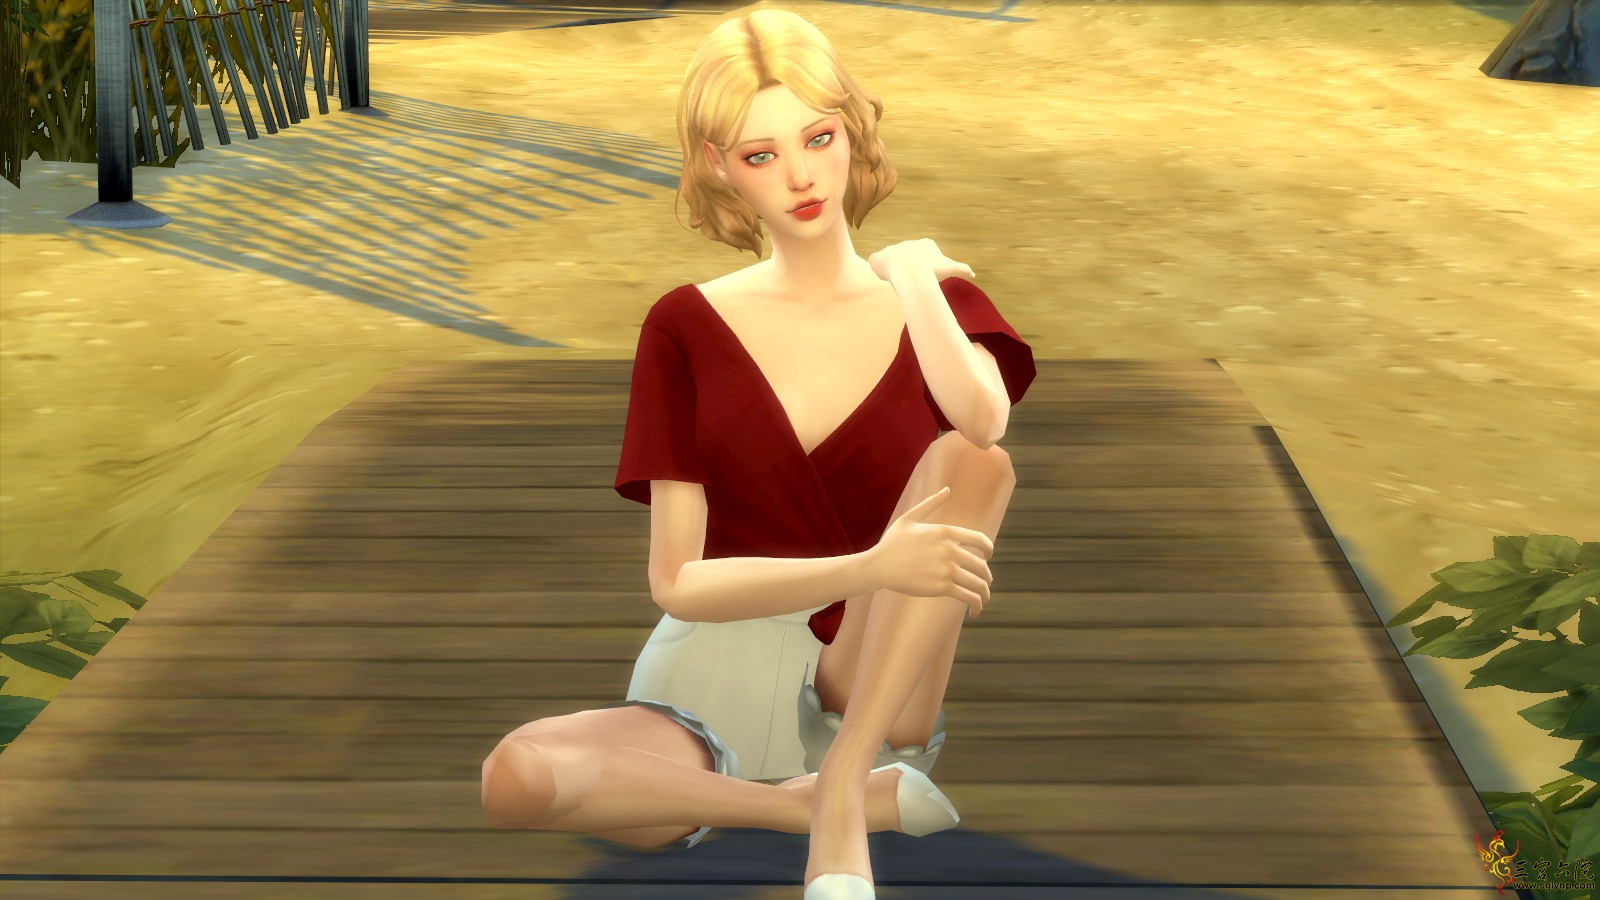 Sims 4 Screenshot 2020.08.22 - 22.10.52.89.png